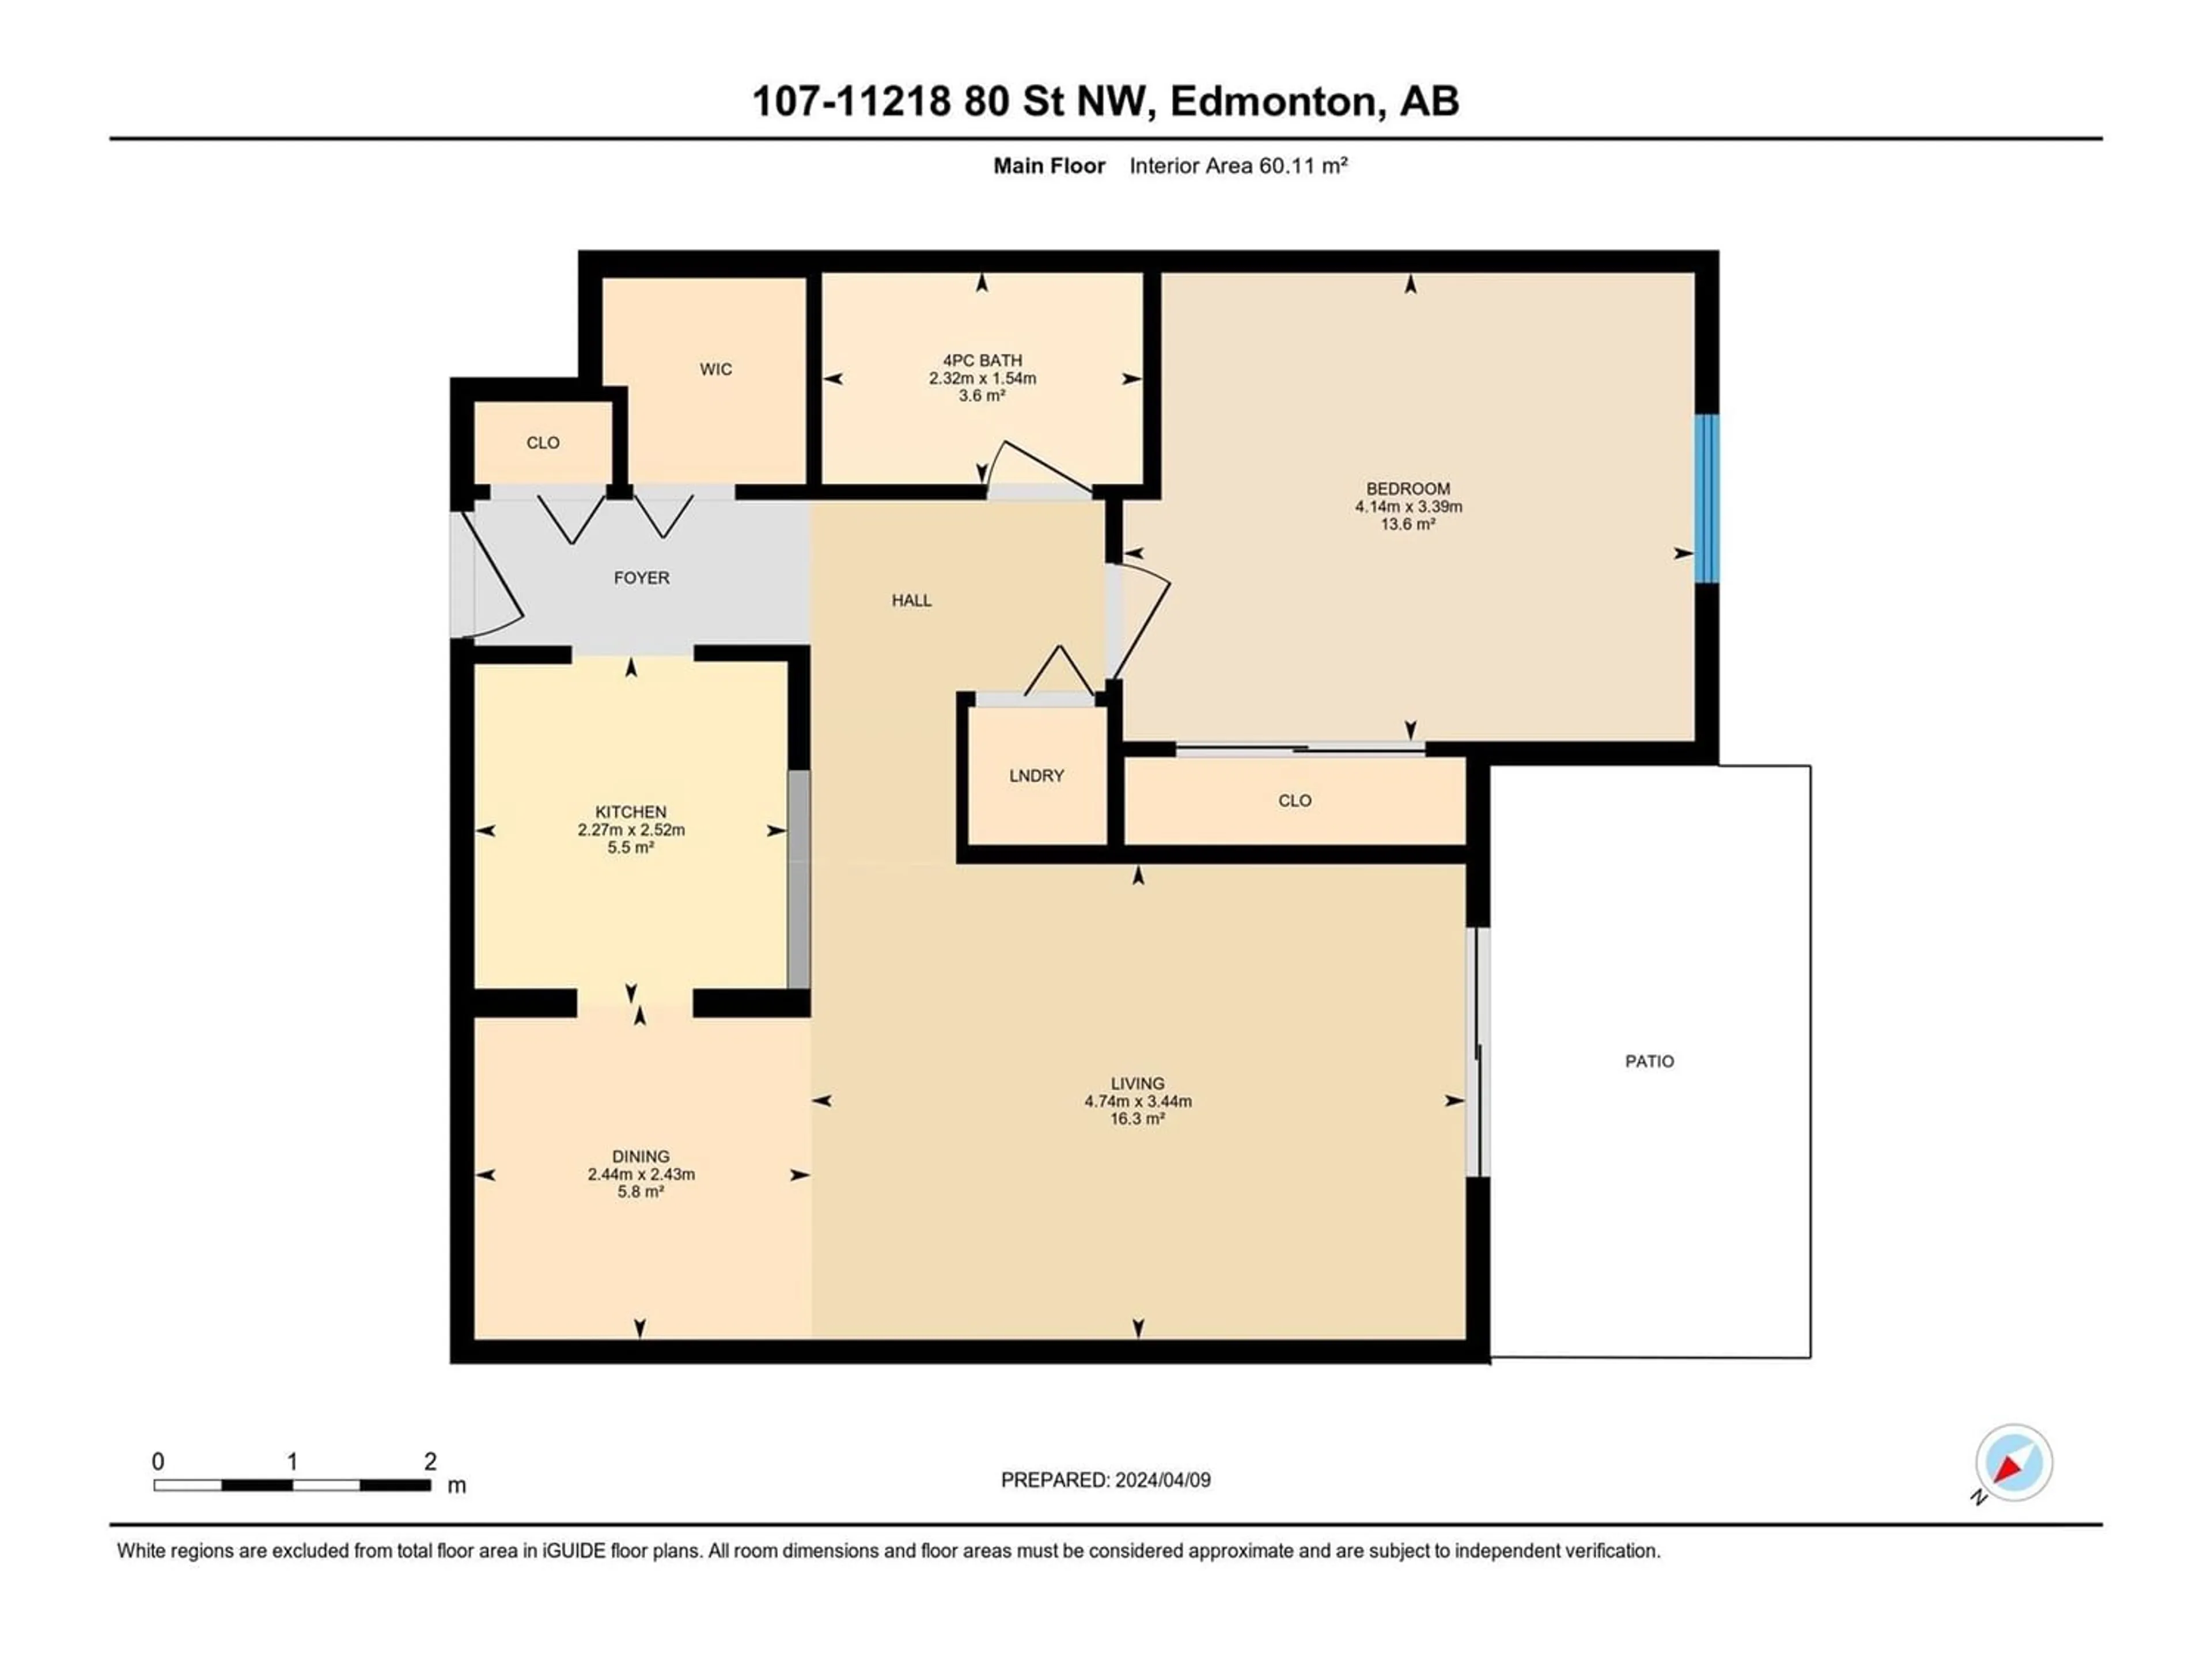 Floor plan for #107 11218 80 ST NW, Edmonton Alberta T5B4V9